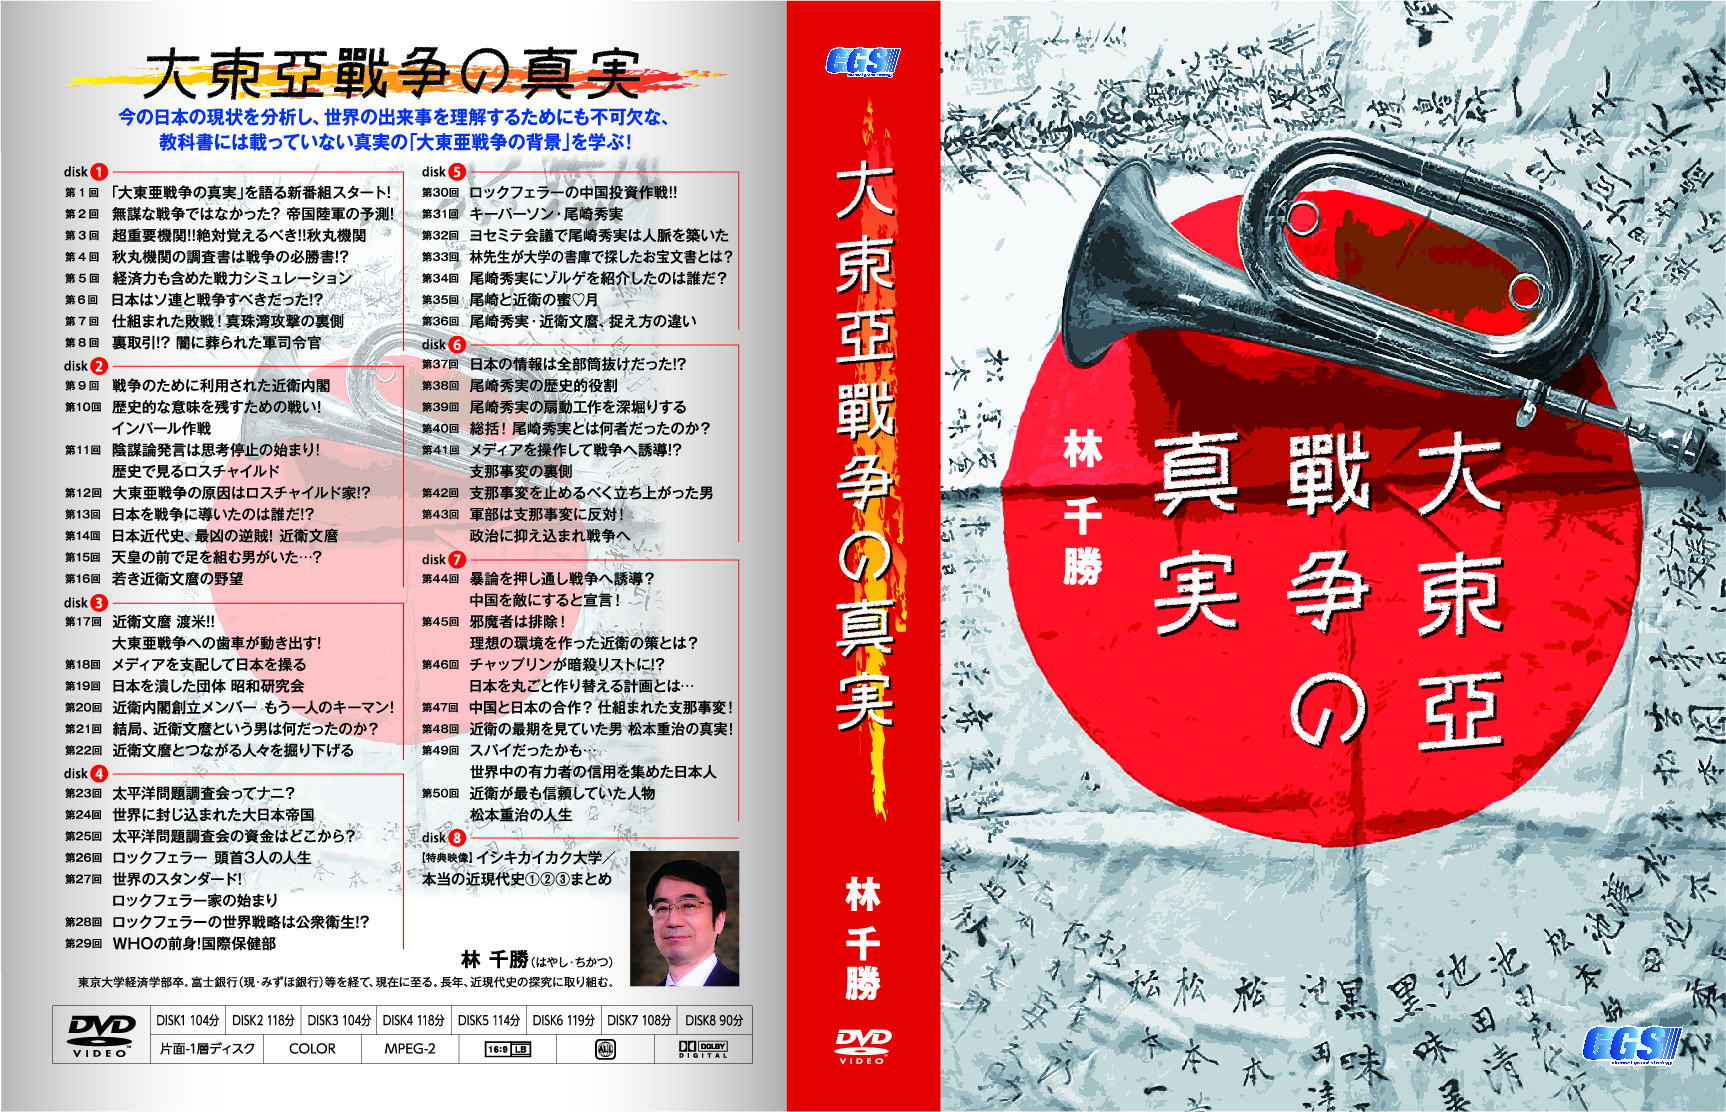 DVD「BANに負けるな 〜日本の医療と健康を考える 